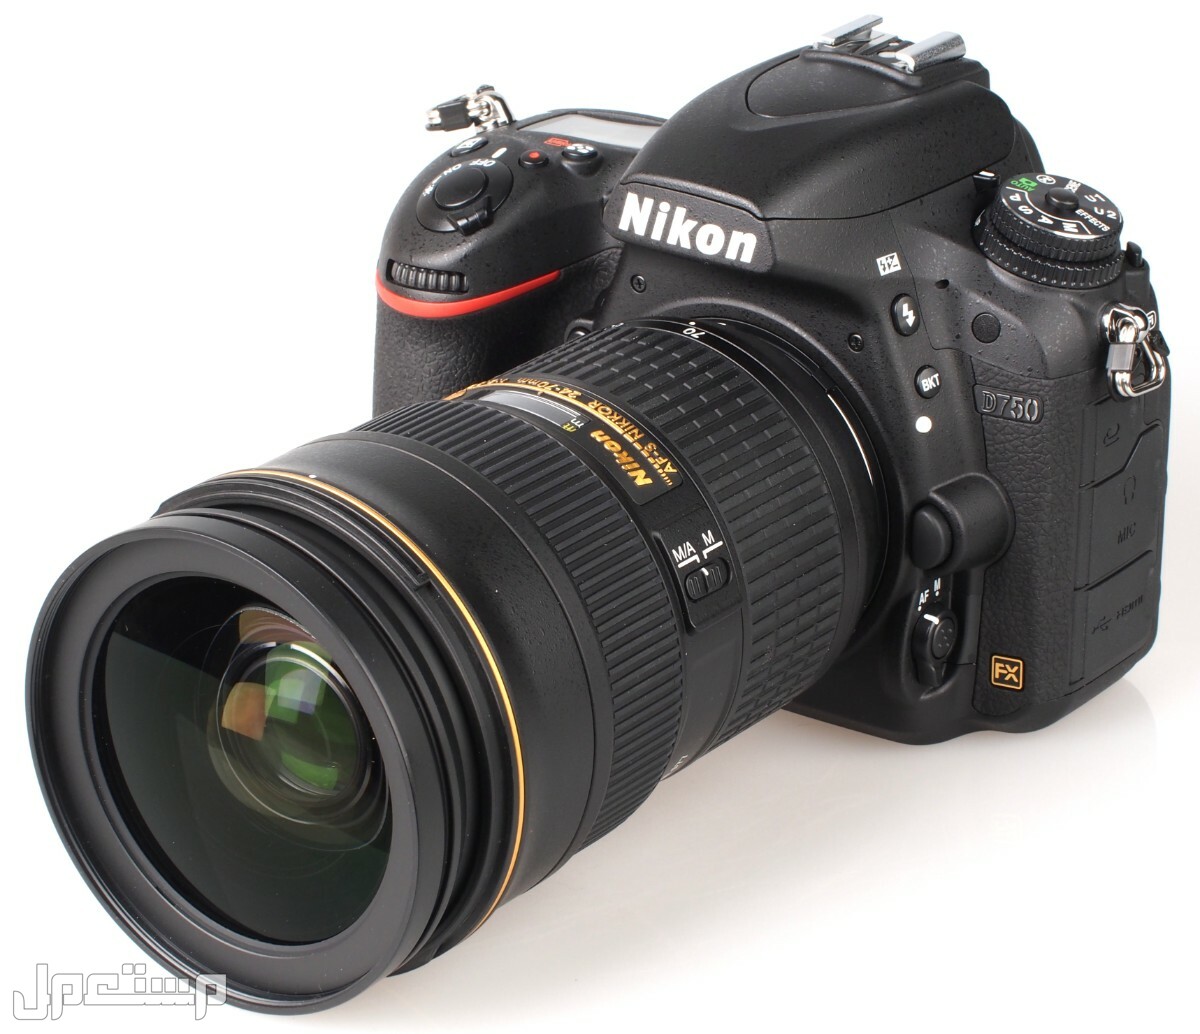 مواصفات ومميزات وأسعار أفضل أنواع كاميرات نيكون للمحترفين كاميرا Nikon D750